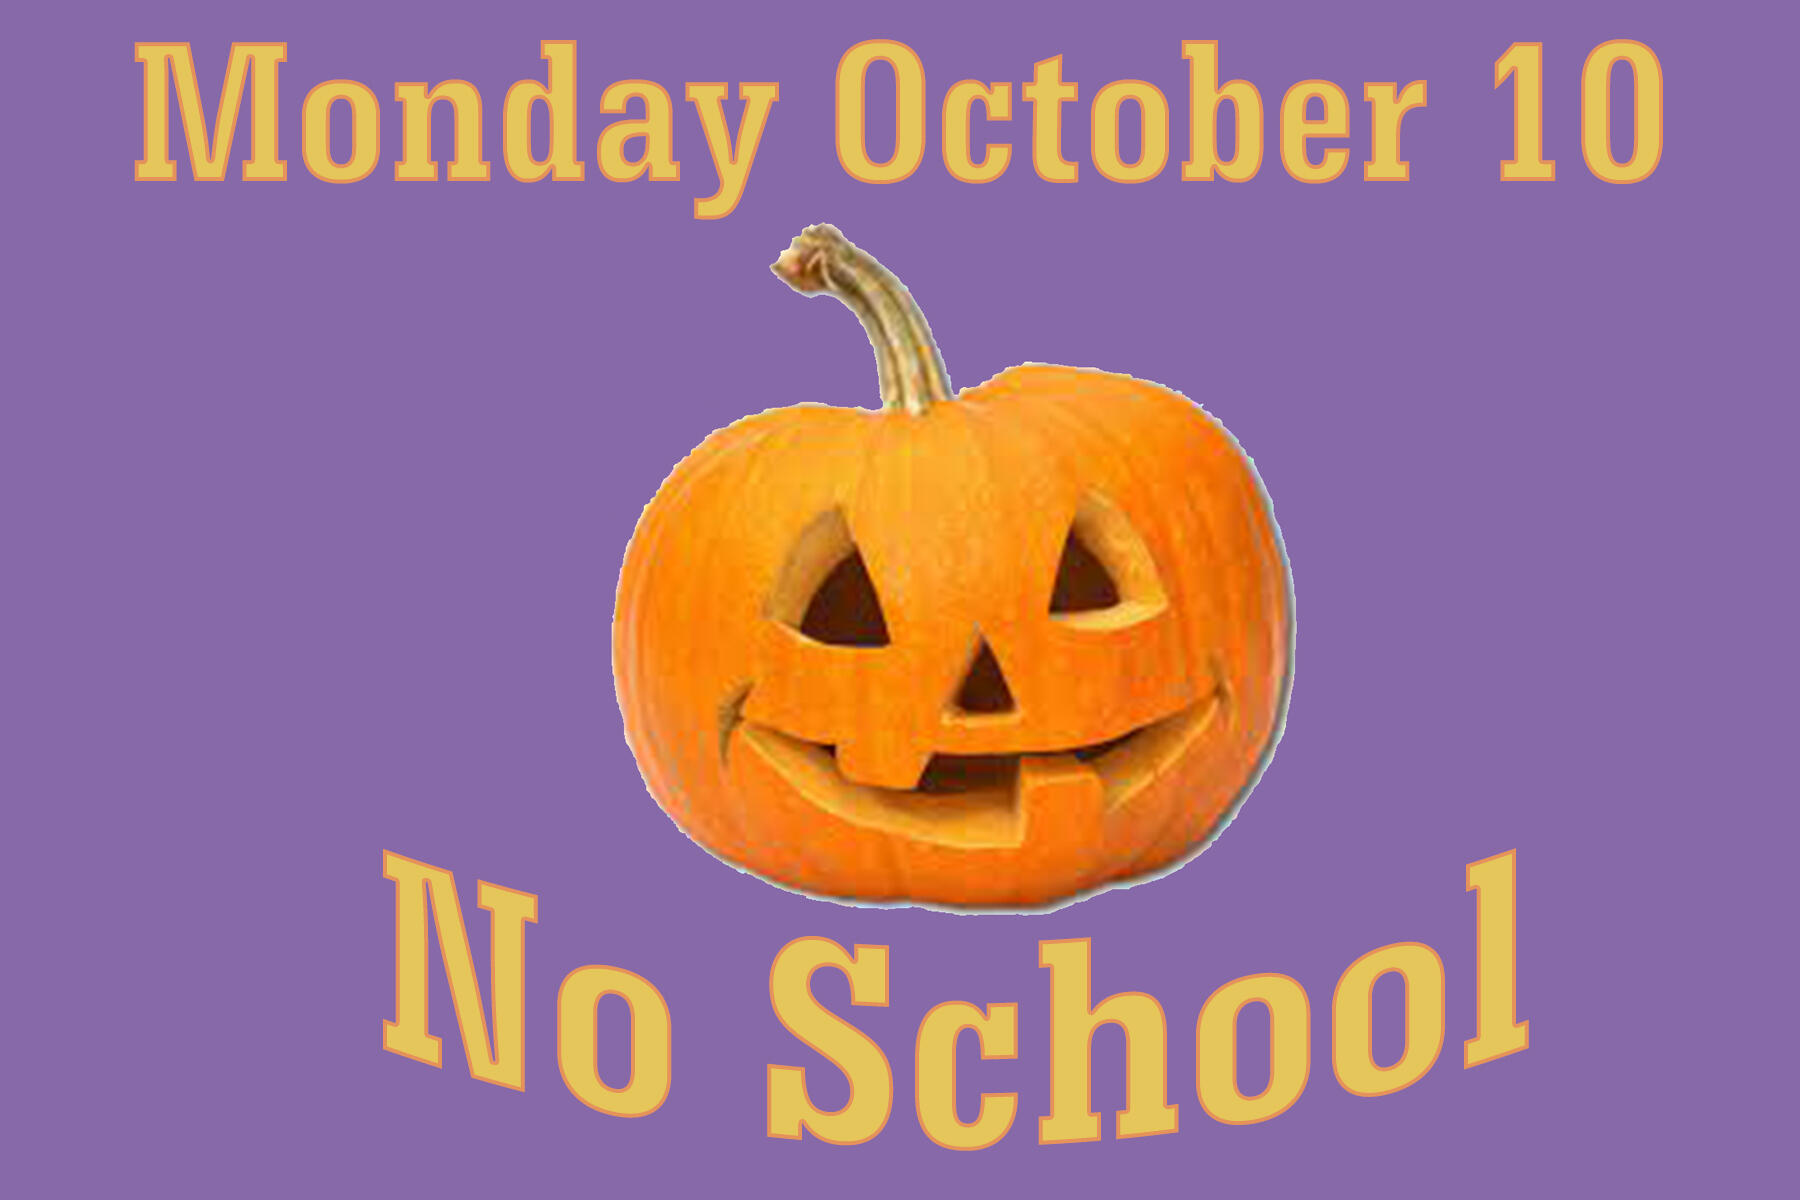 No School Monday October 10